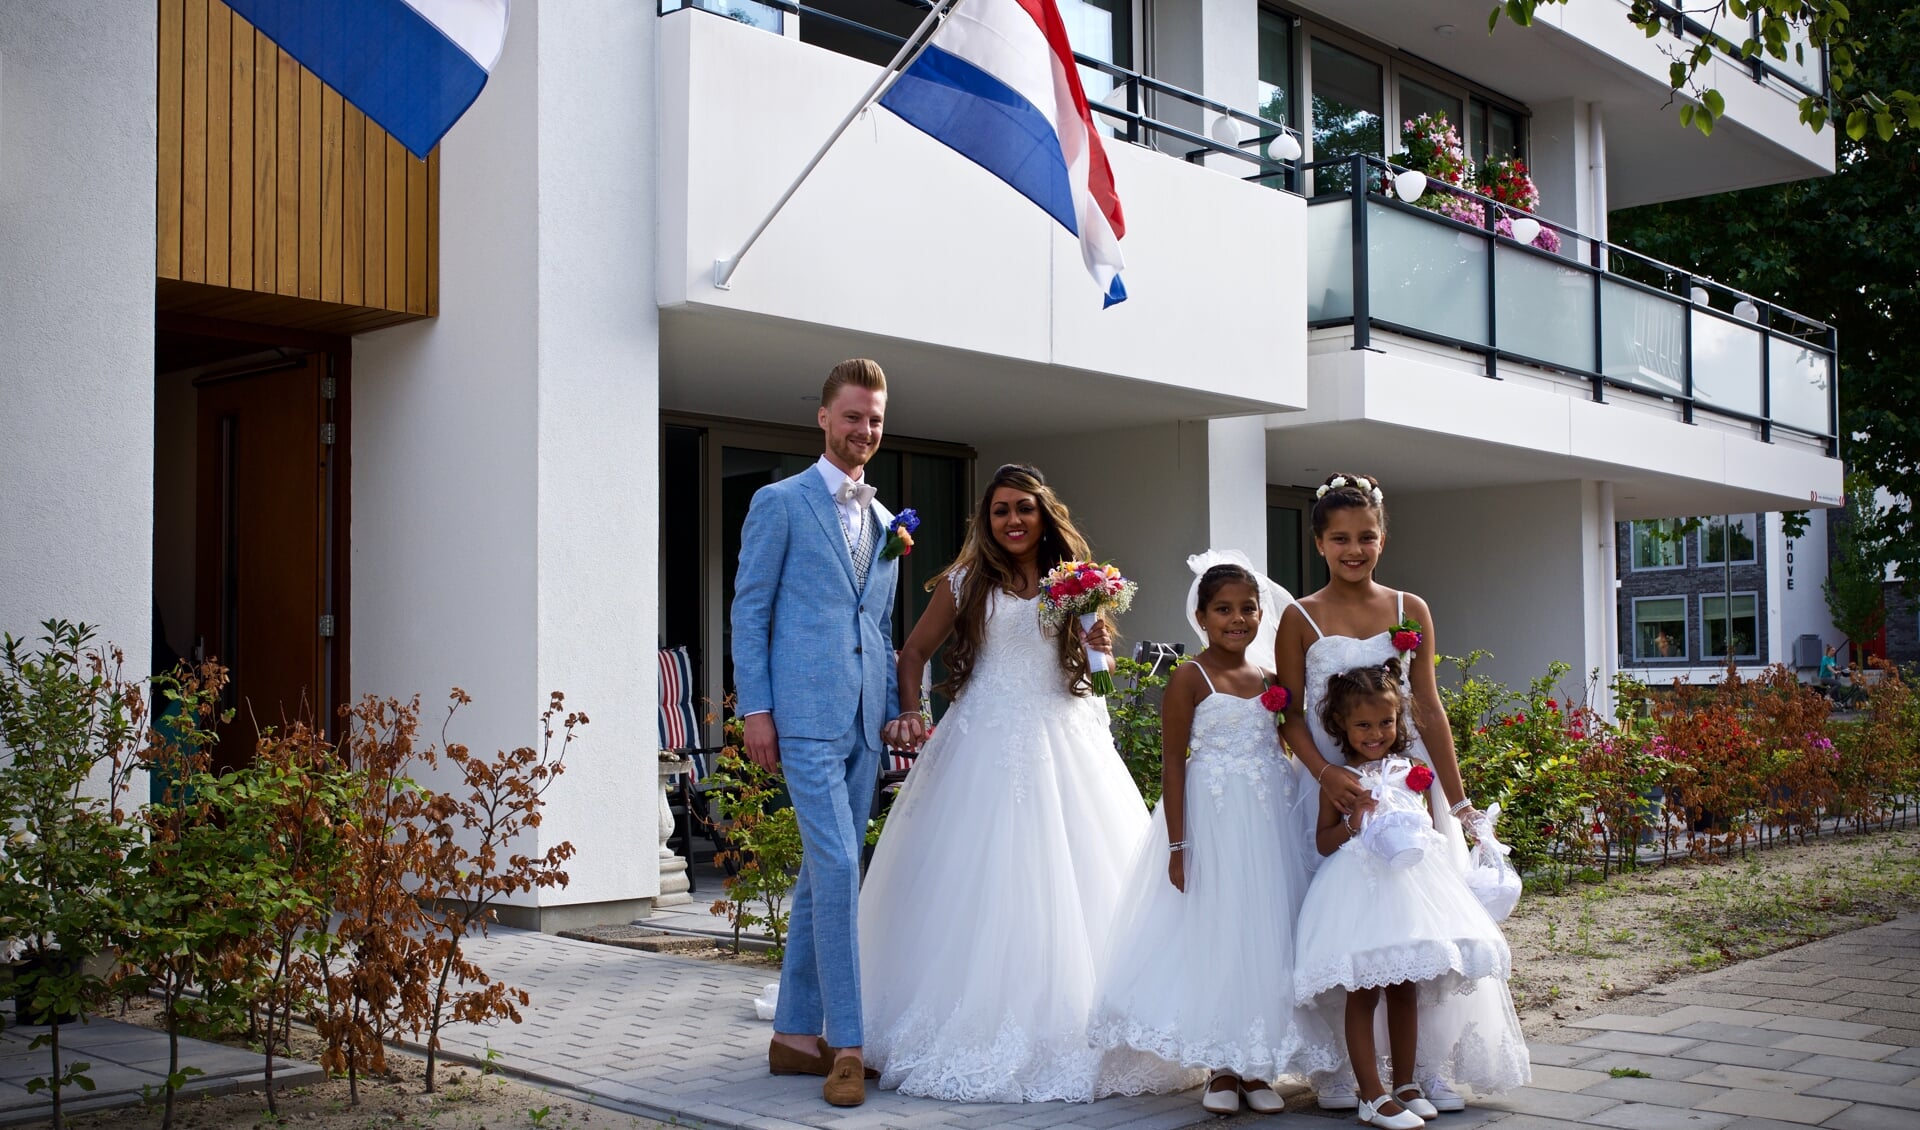 Martijn en Anisha voor het appartementencomplex 'Van Muyen' samen met de bruidsmeisjes Fabienne, Eline en Iselle.